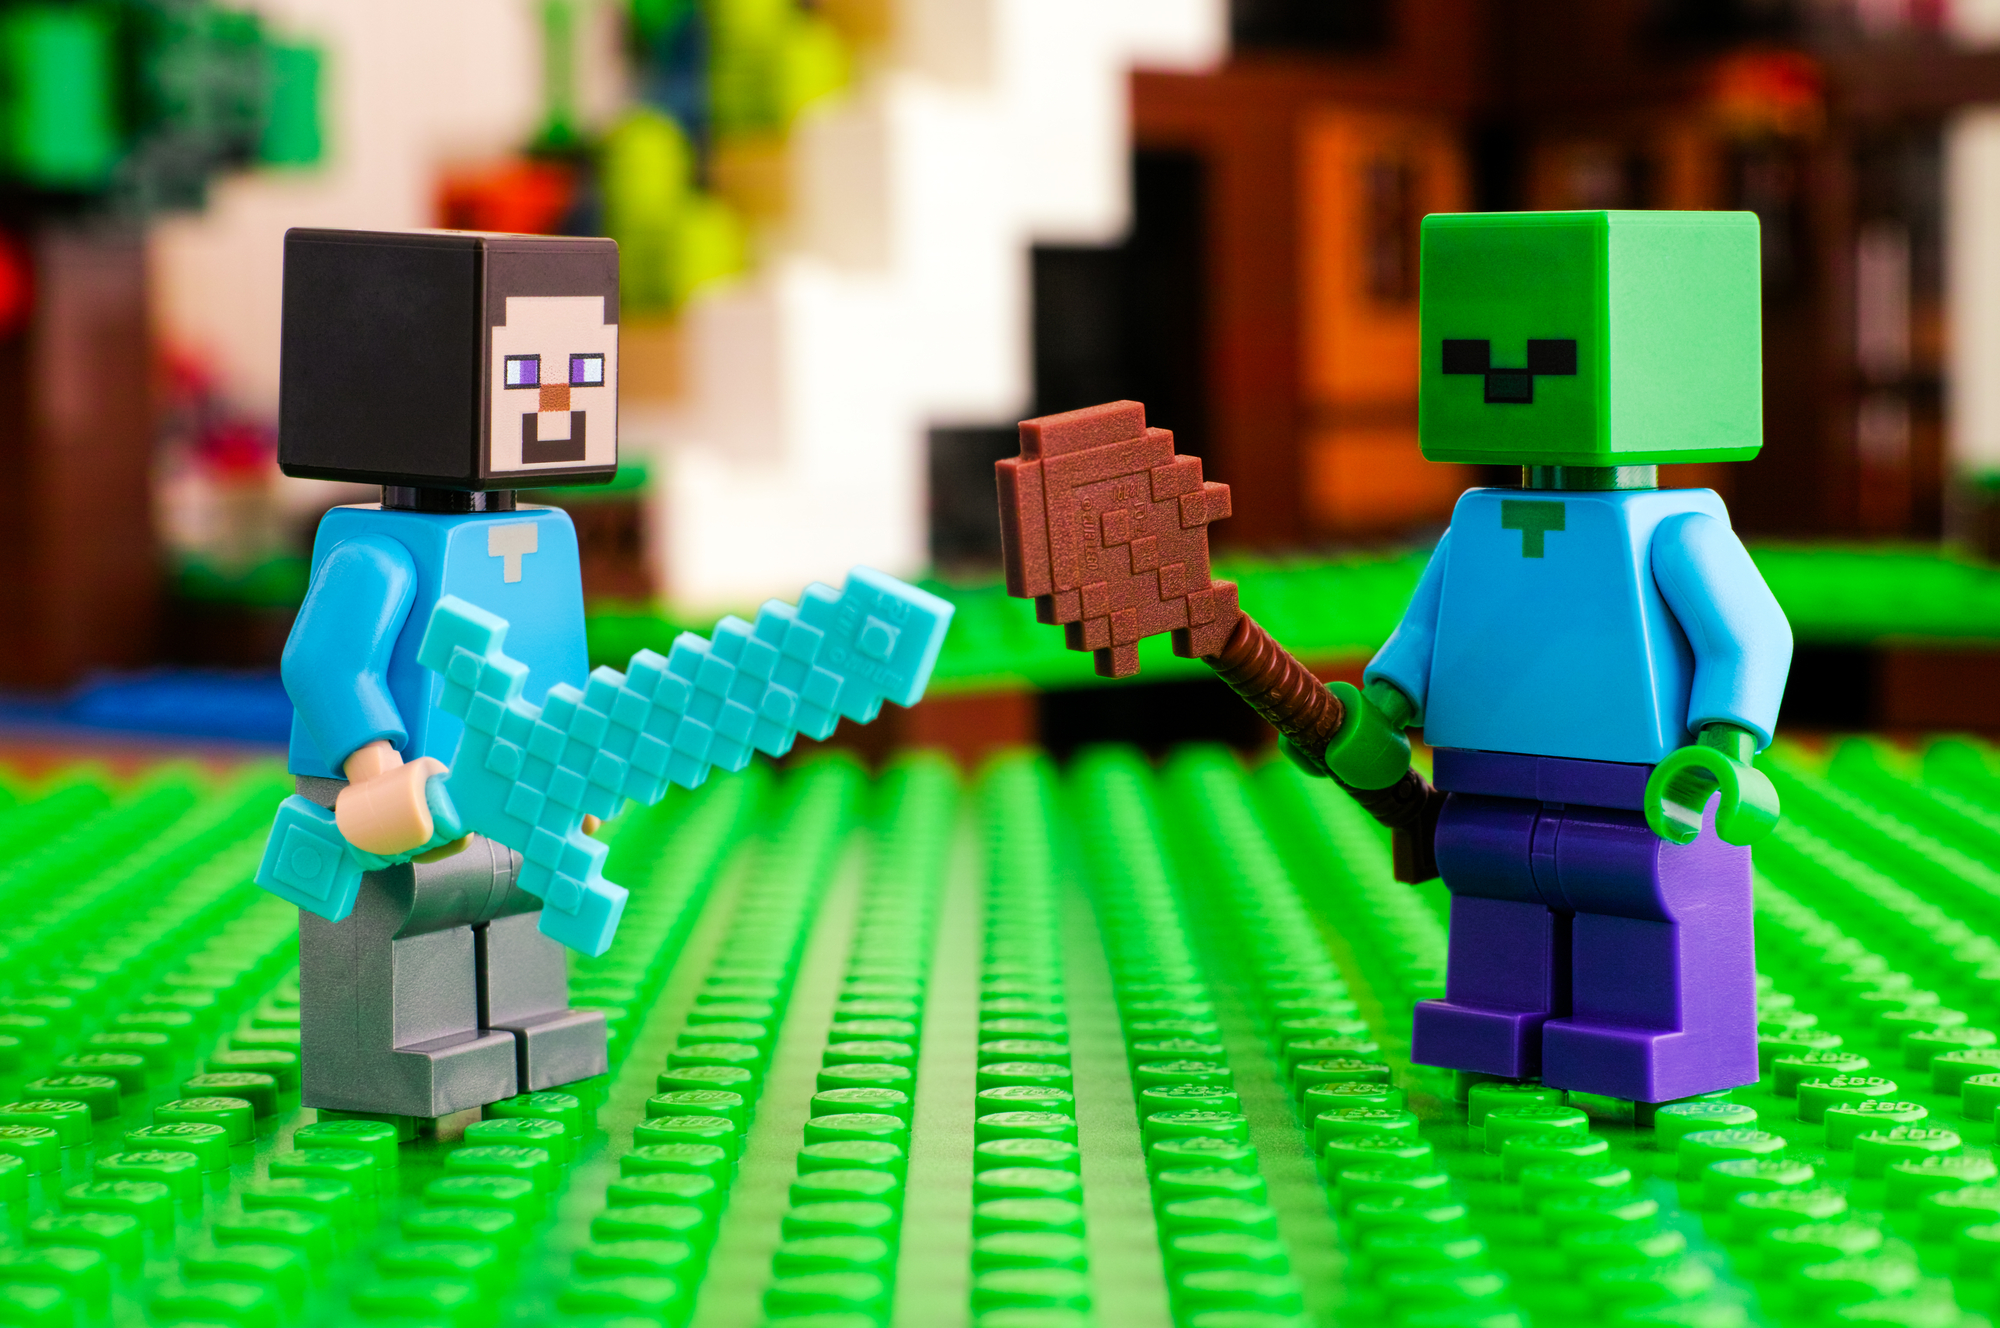 Zwei Lego-Minecraft-Männchen bekämpfen sich gegenseitig